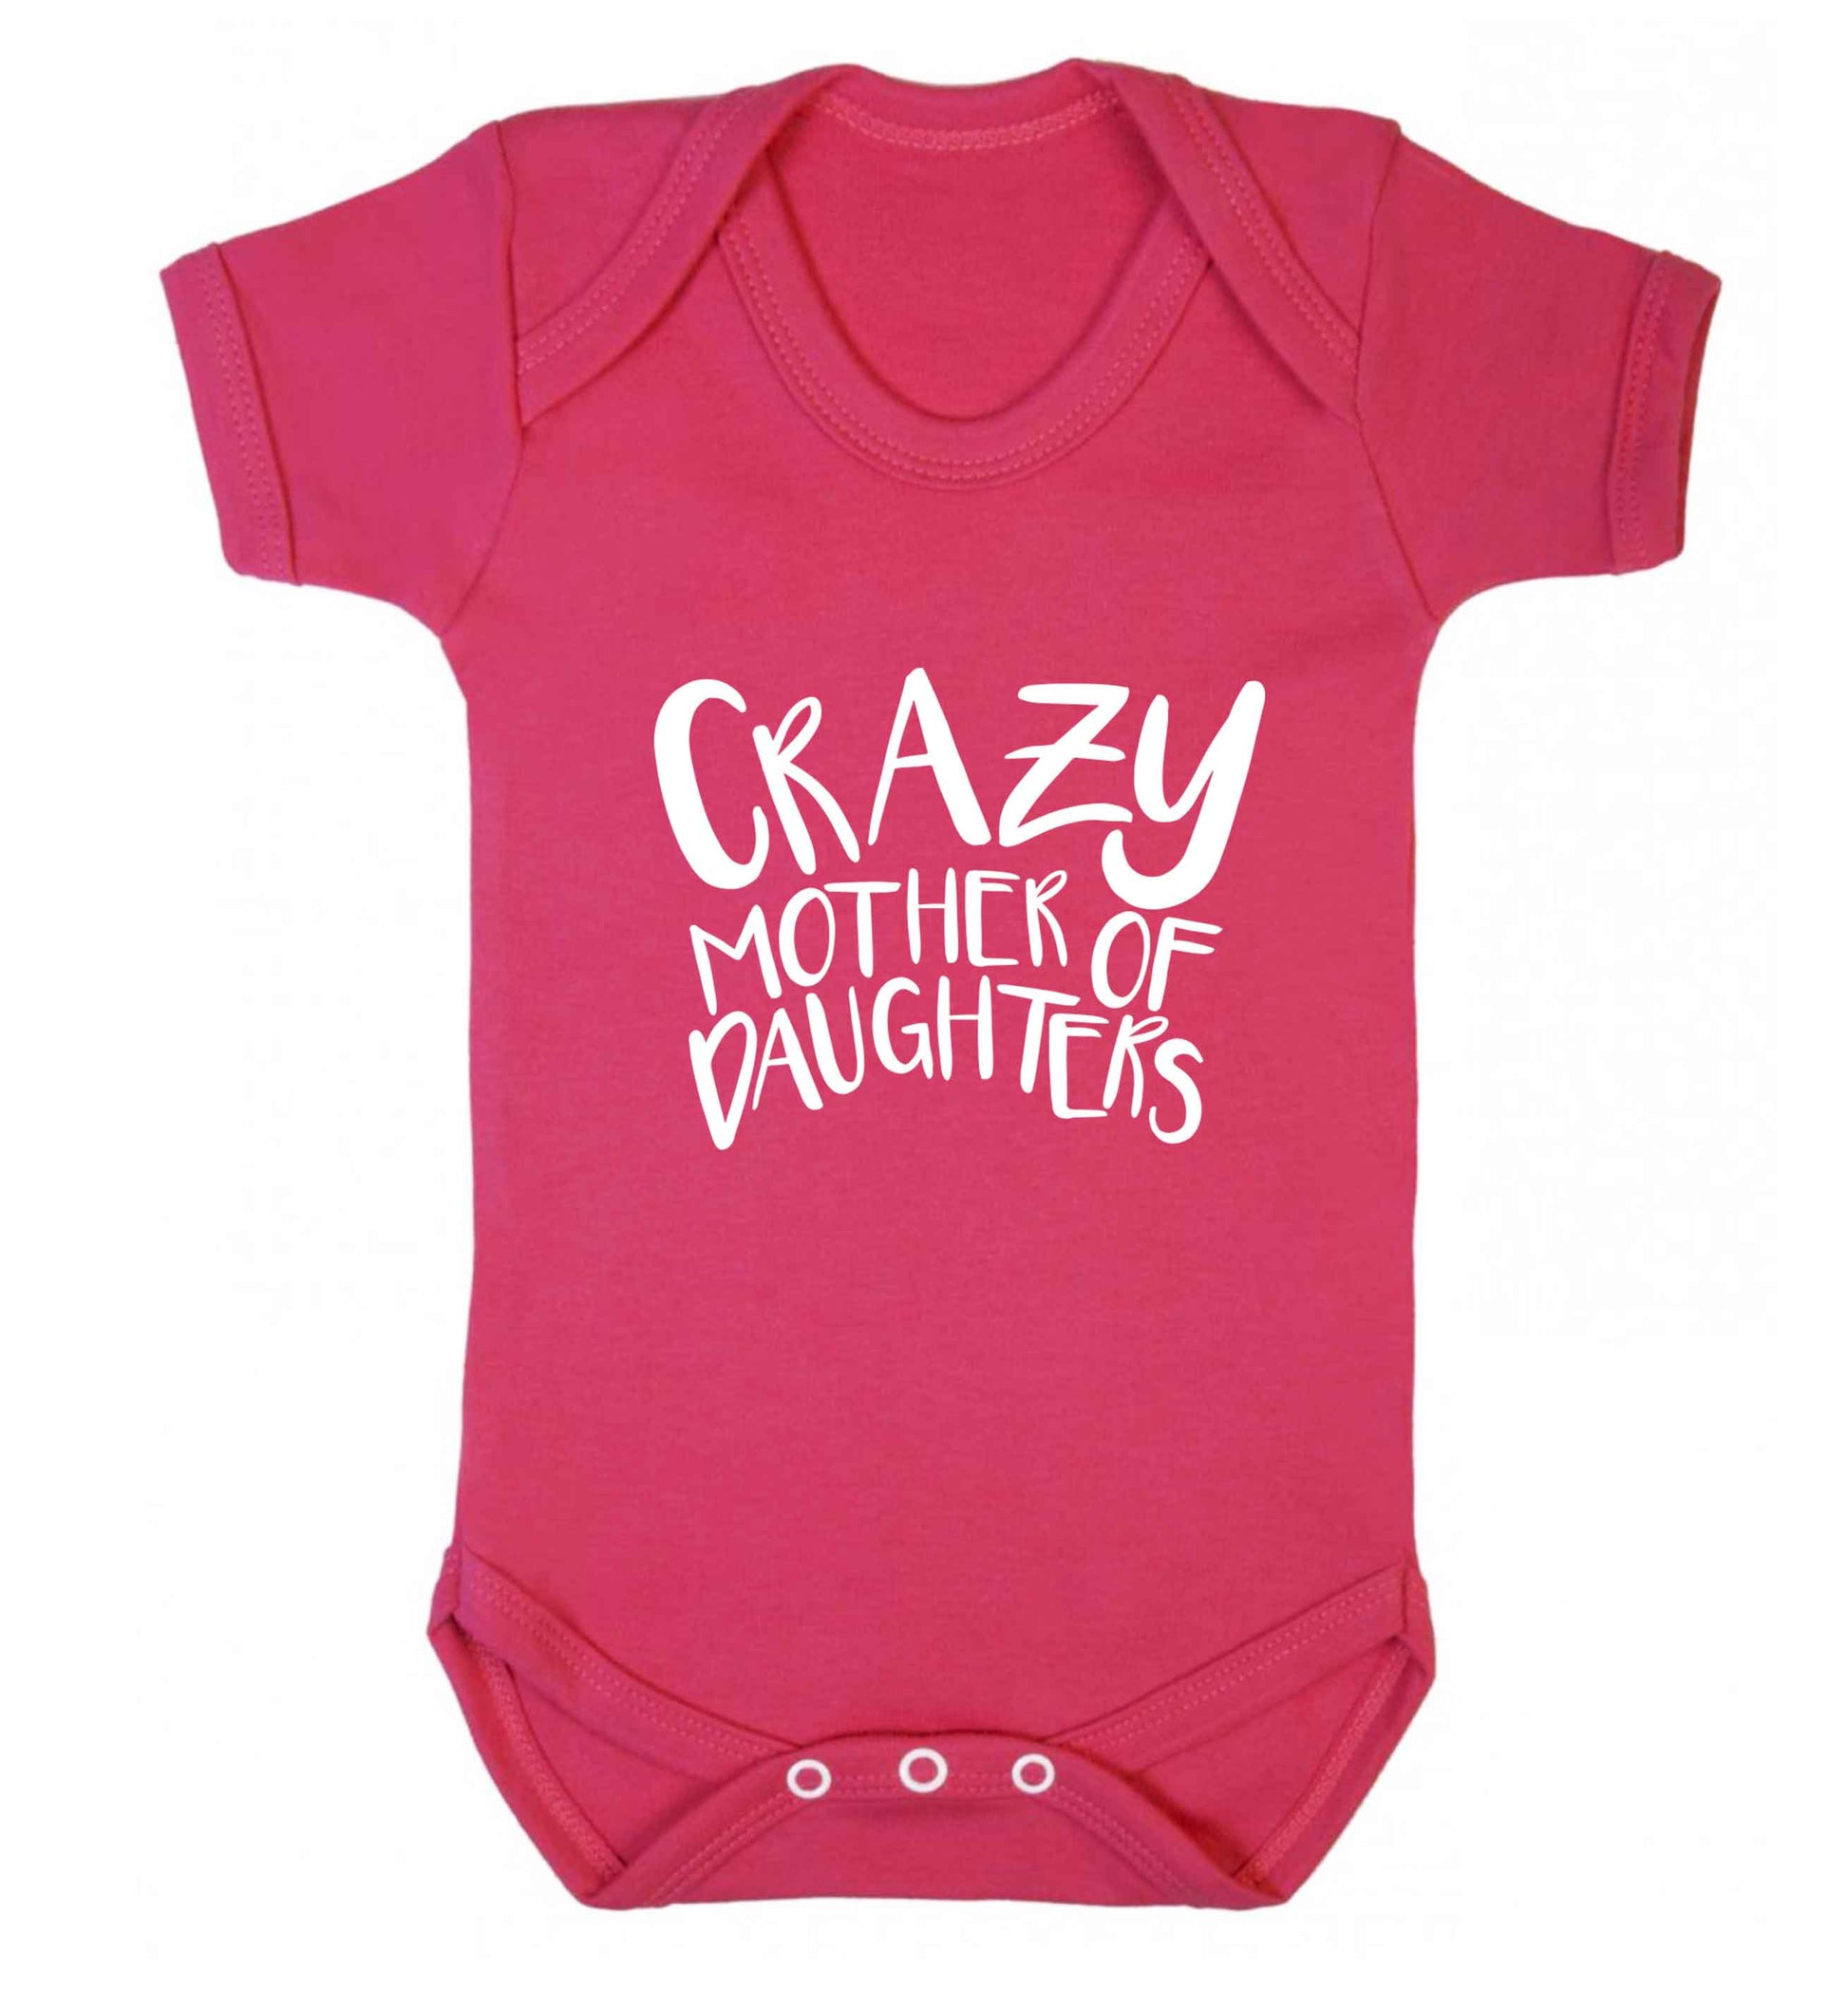 Crazy mother of daughters baby vest dark pink 18-24 months